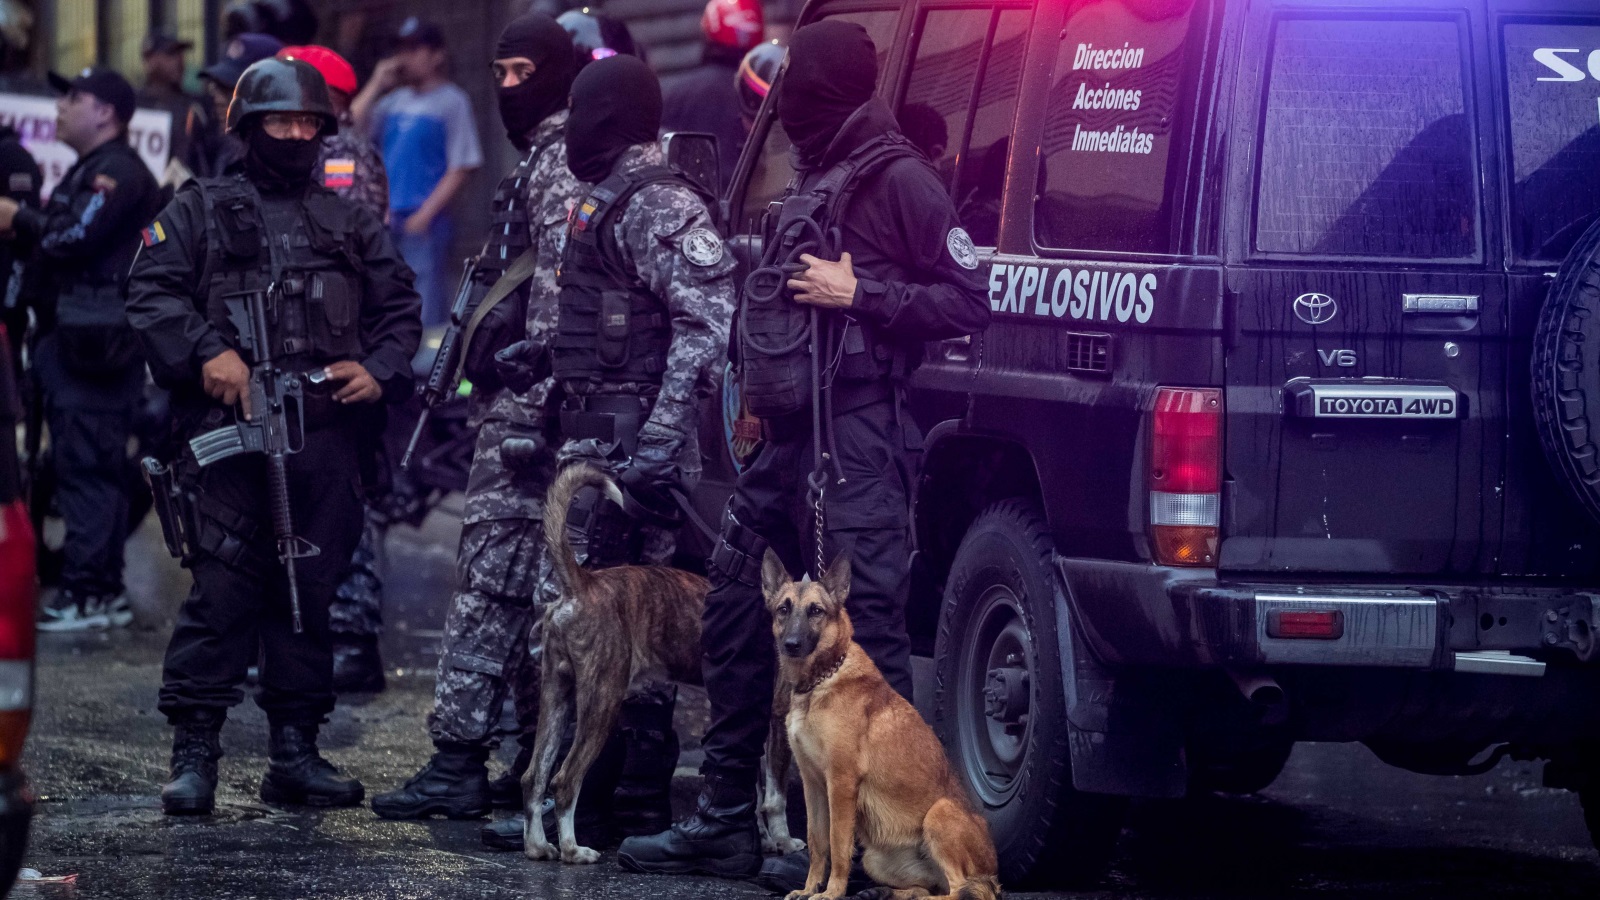 ‪أفراد من قوات الأمن الفنزويلي يقفون قرب مكان انفجار طائرة مسيرة غير بعيد من استعراض عسكري شارك فيه الرئيس مادورو‬ (الأوروبية)